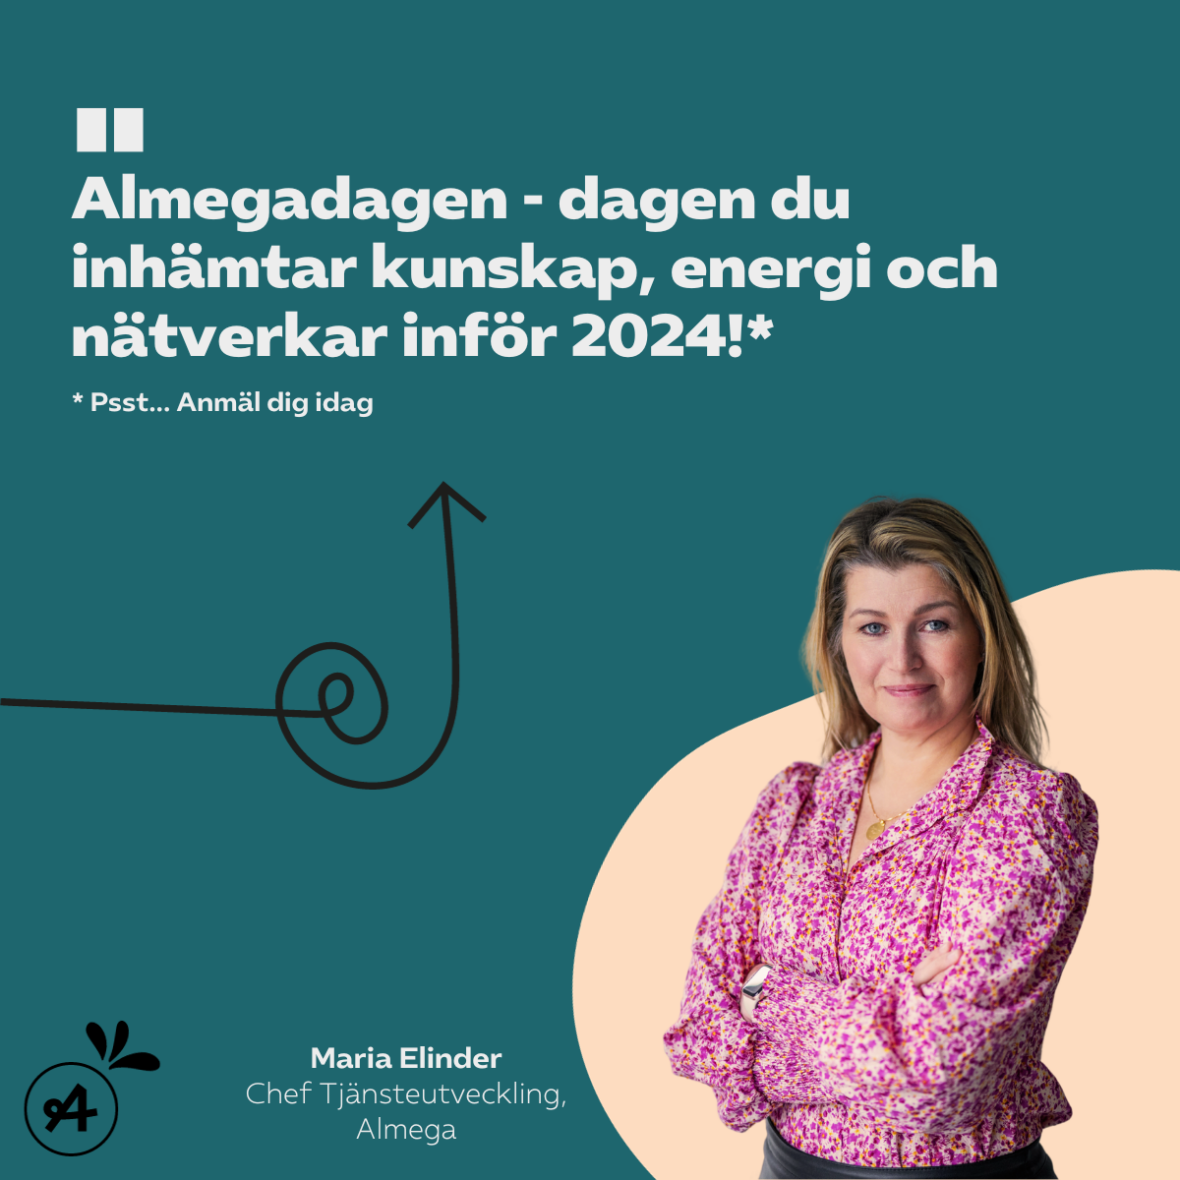 Grafisk bild med foto på Almegas chef för Tjänsteutveckling och citat: "Almegadagen - dagen du inhämtar kunskap, energi och nätverkar inför 2024!". Bild länkar till anmälningssidan för Almegadagen.